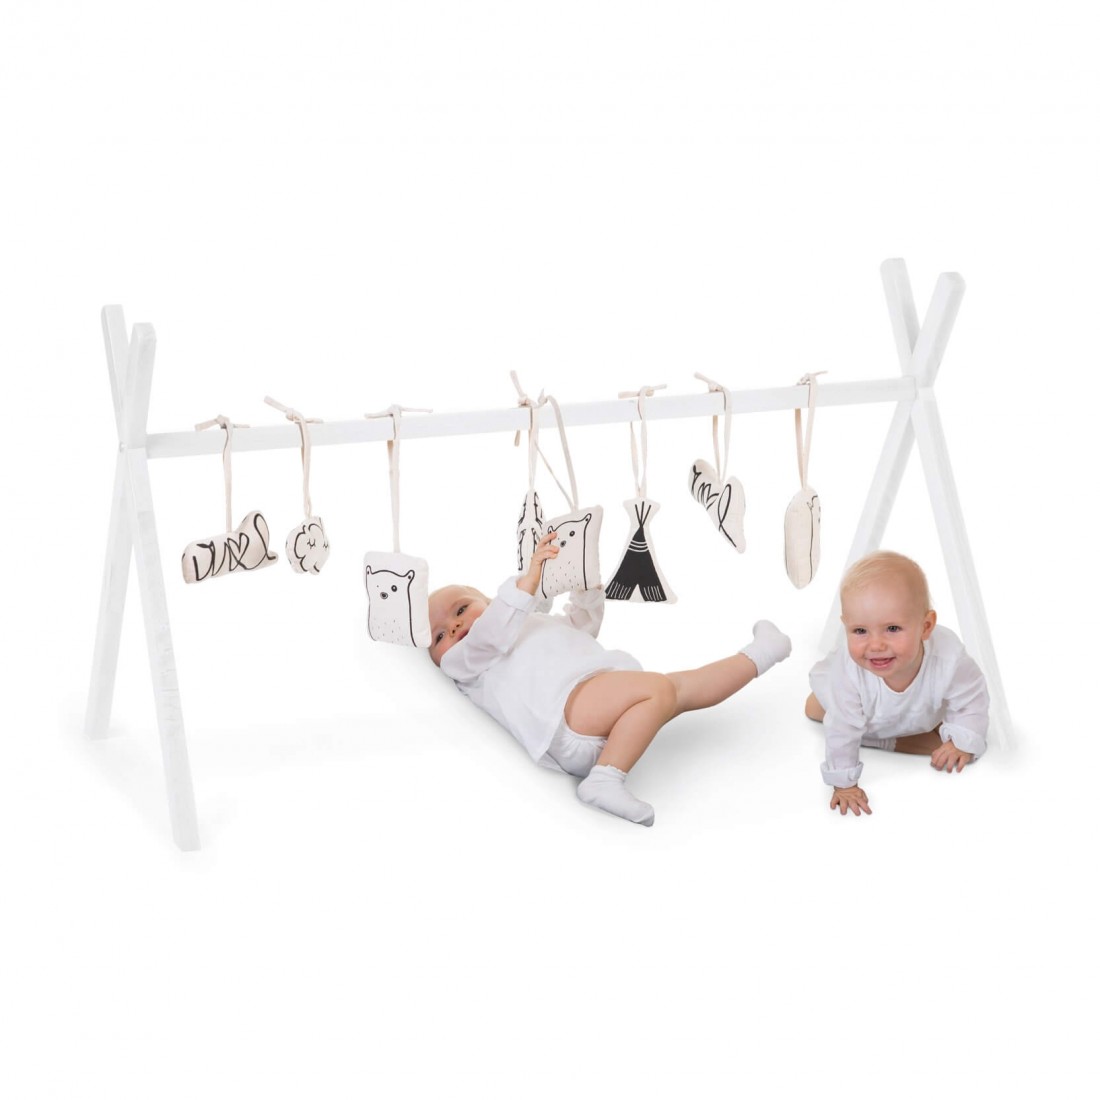 Arche d'éveil, 3 jouets suspendus pour stimuler bébé